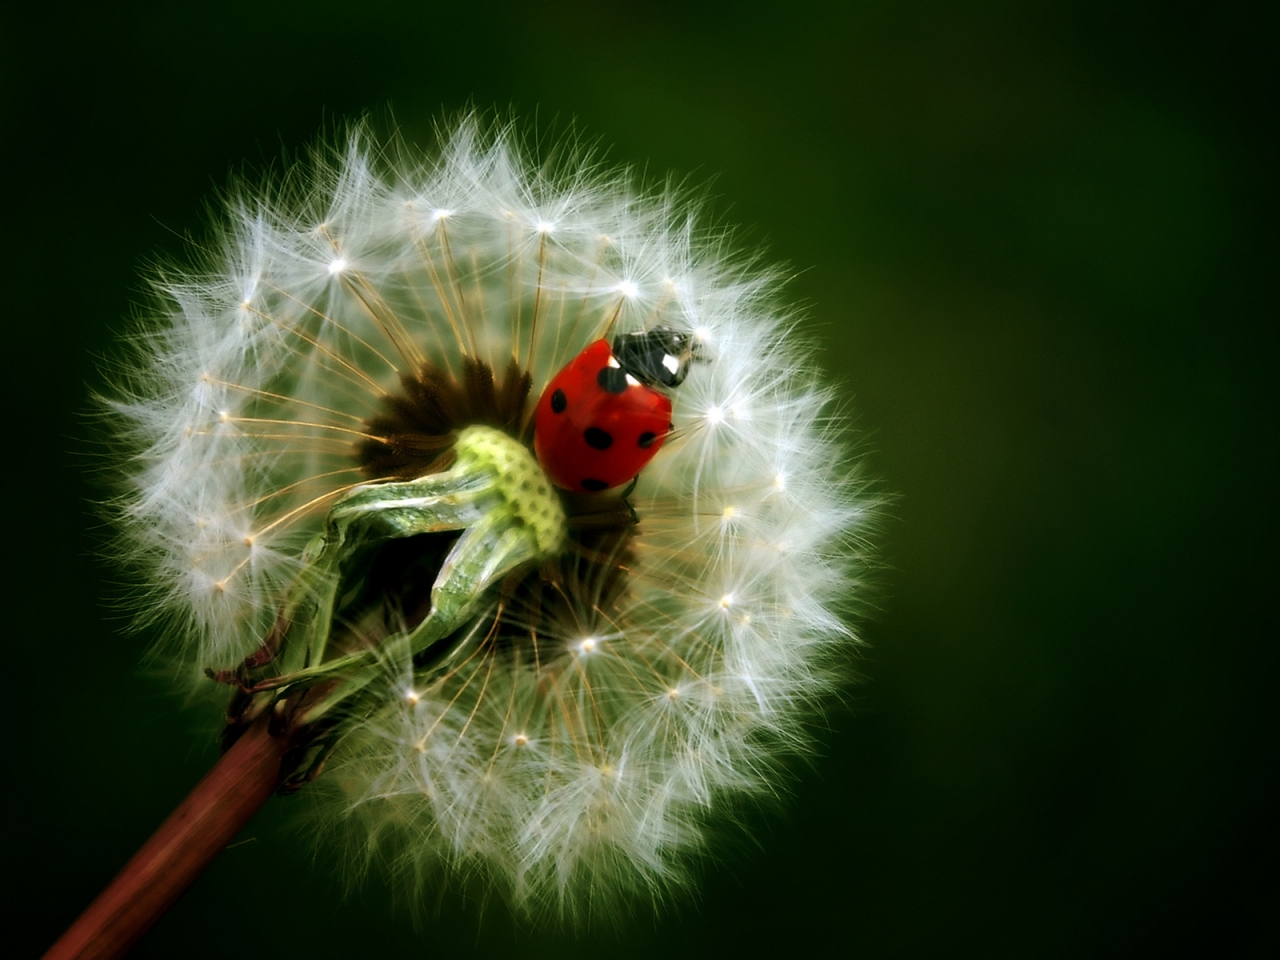 Ladybug for 1280 x 960 resolution